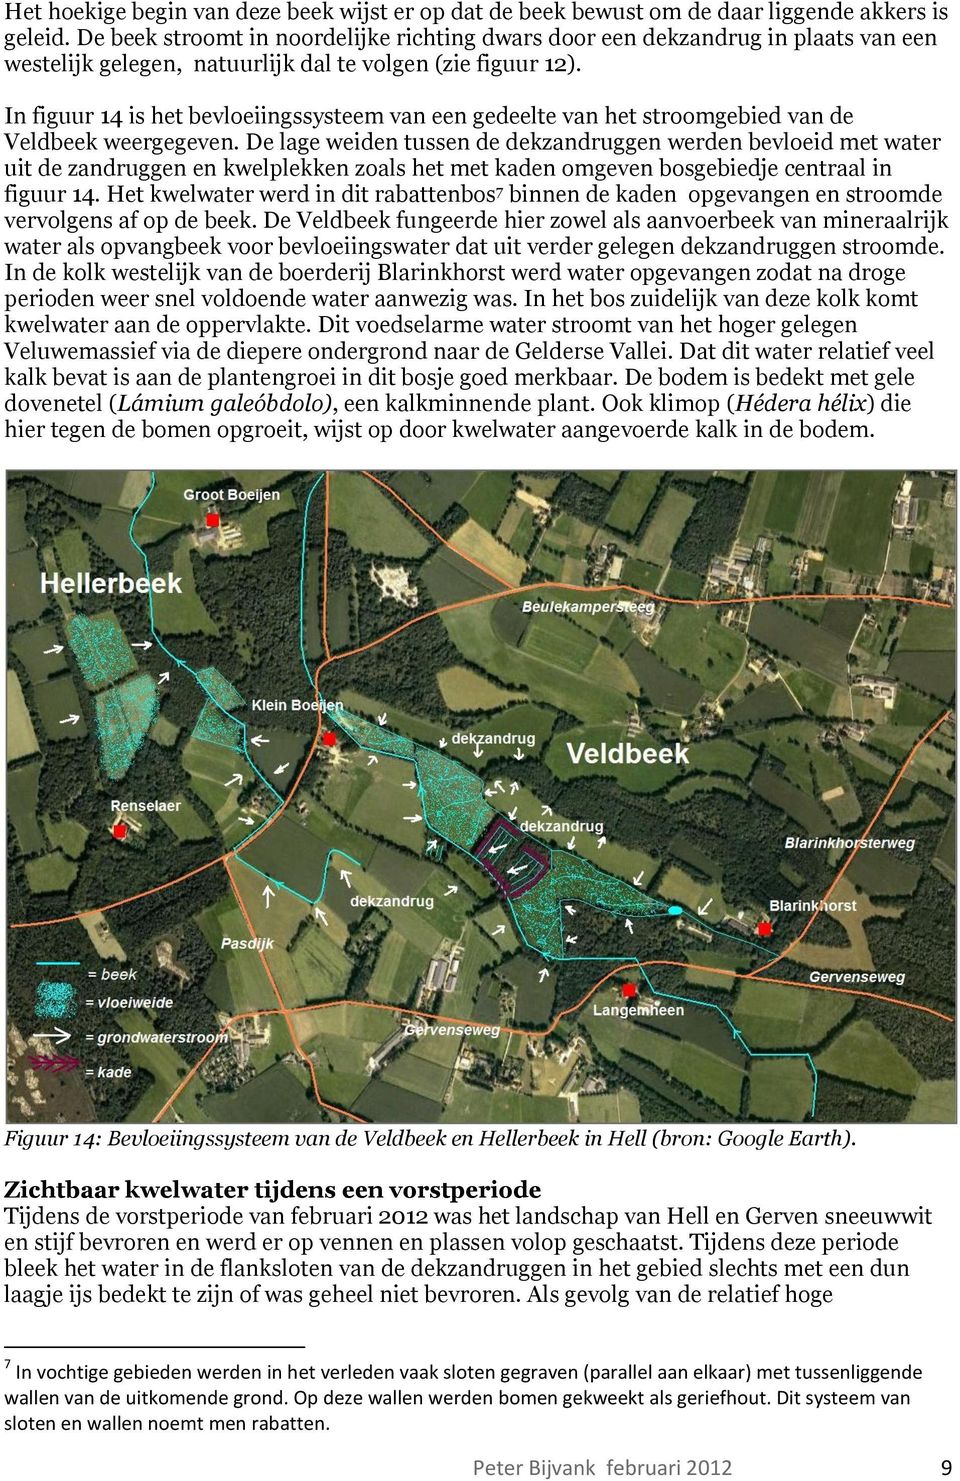 In figuur 14 is het bevloeiingssysteem van een gedeelte van het stroomgebied van de Veldbeek weergegeven.